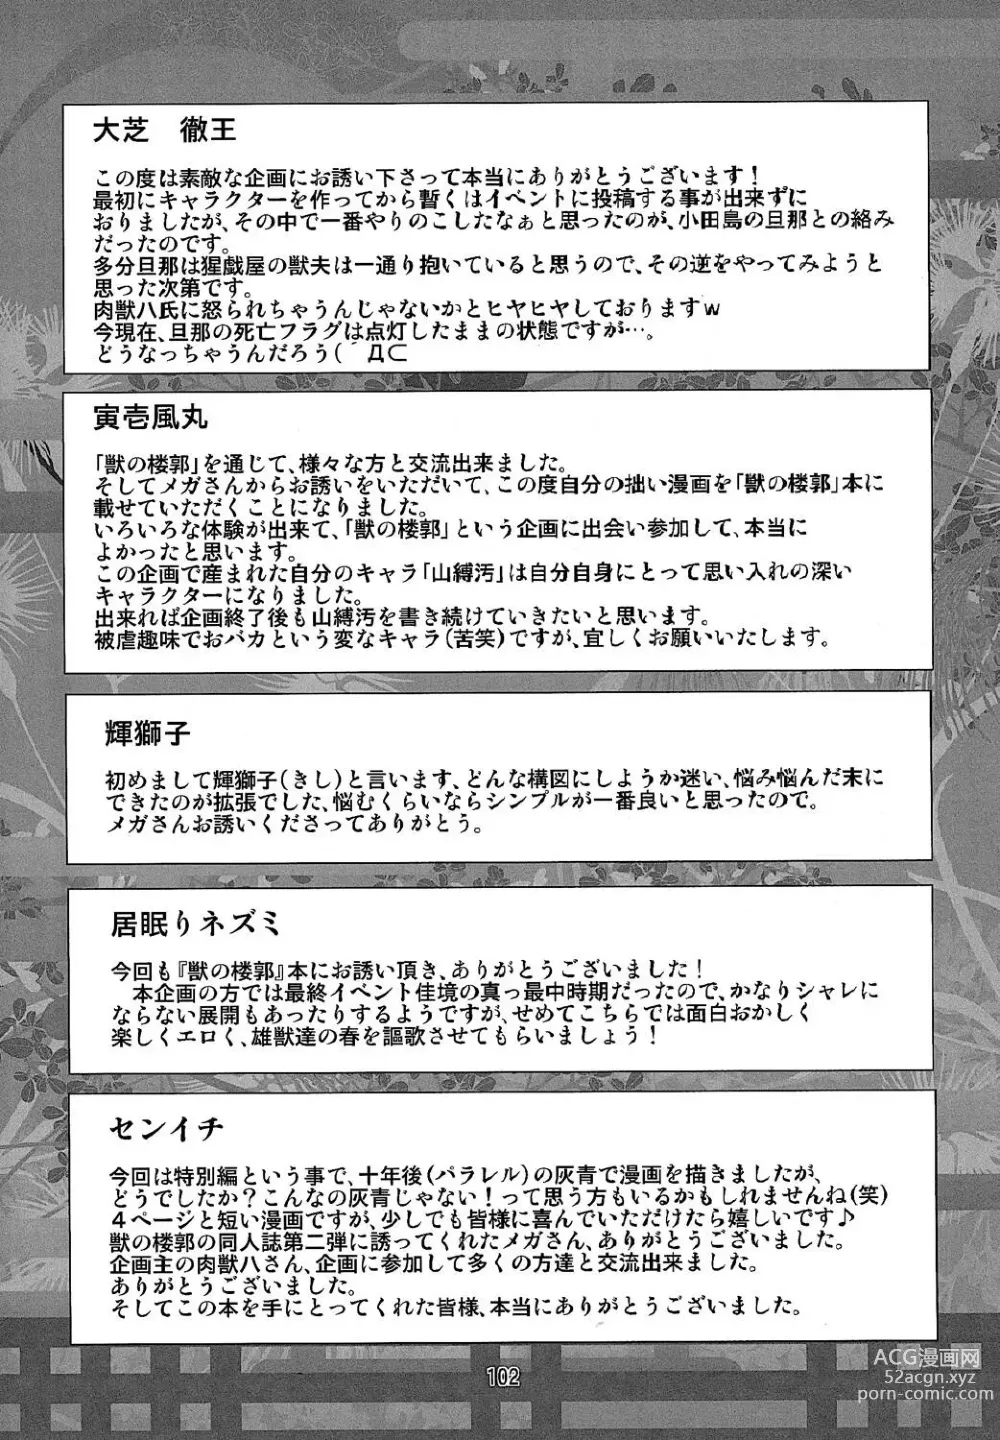 Page 101 of doujinshi Kemono no Roukaku - Utage